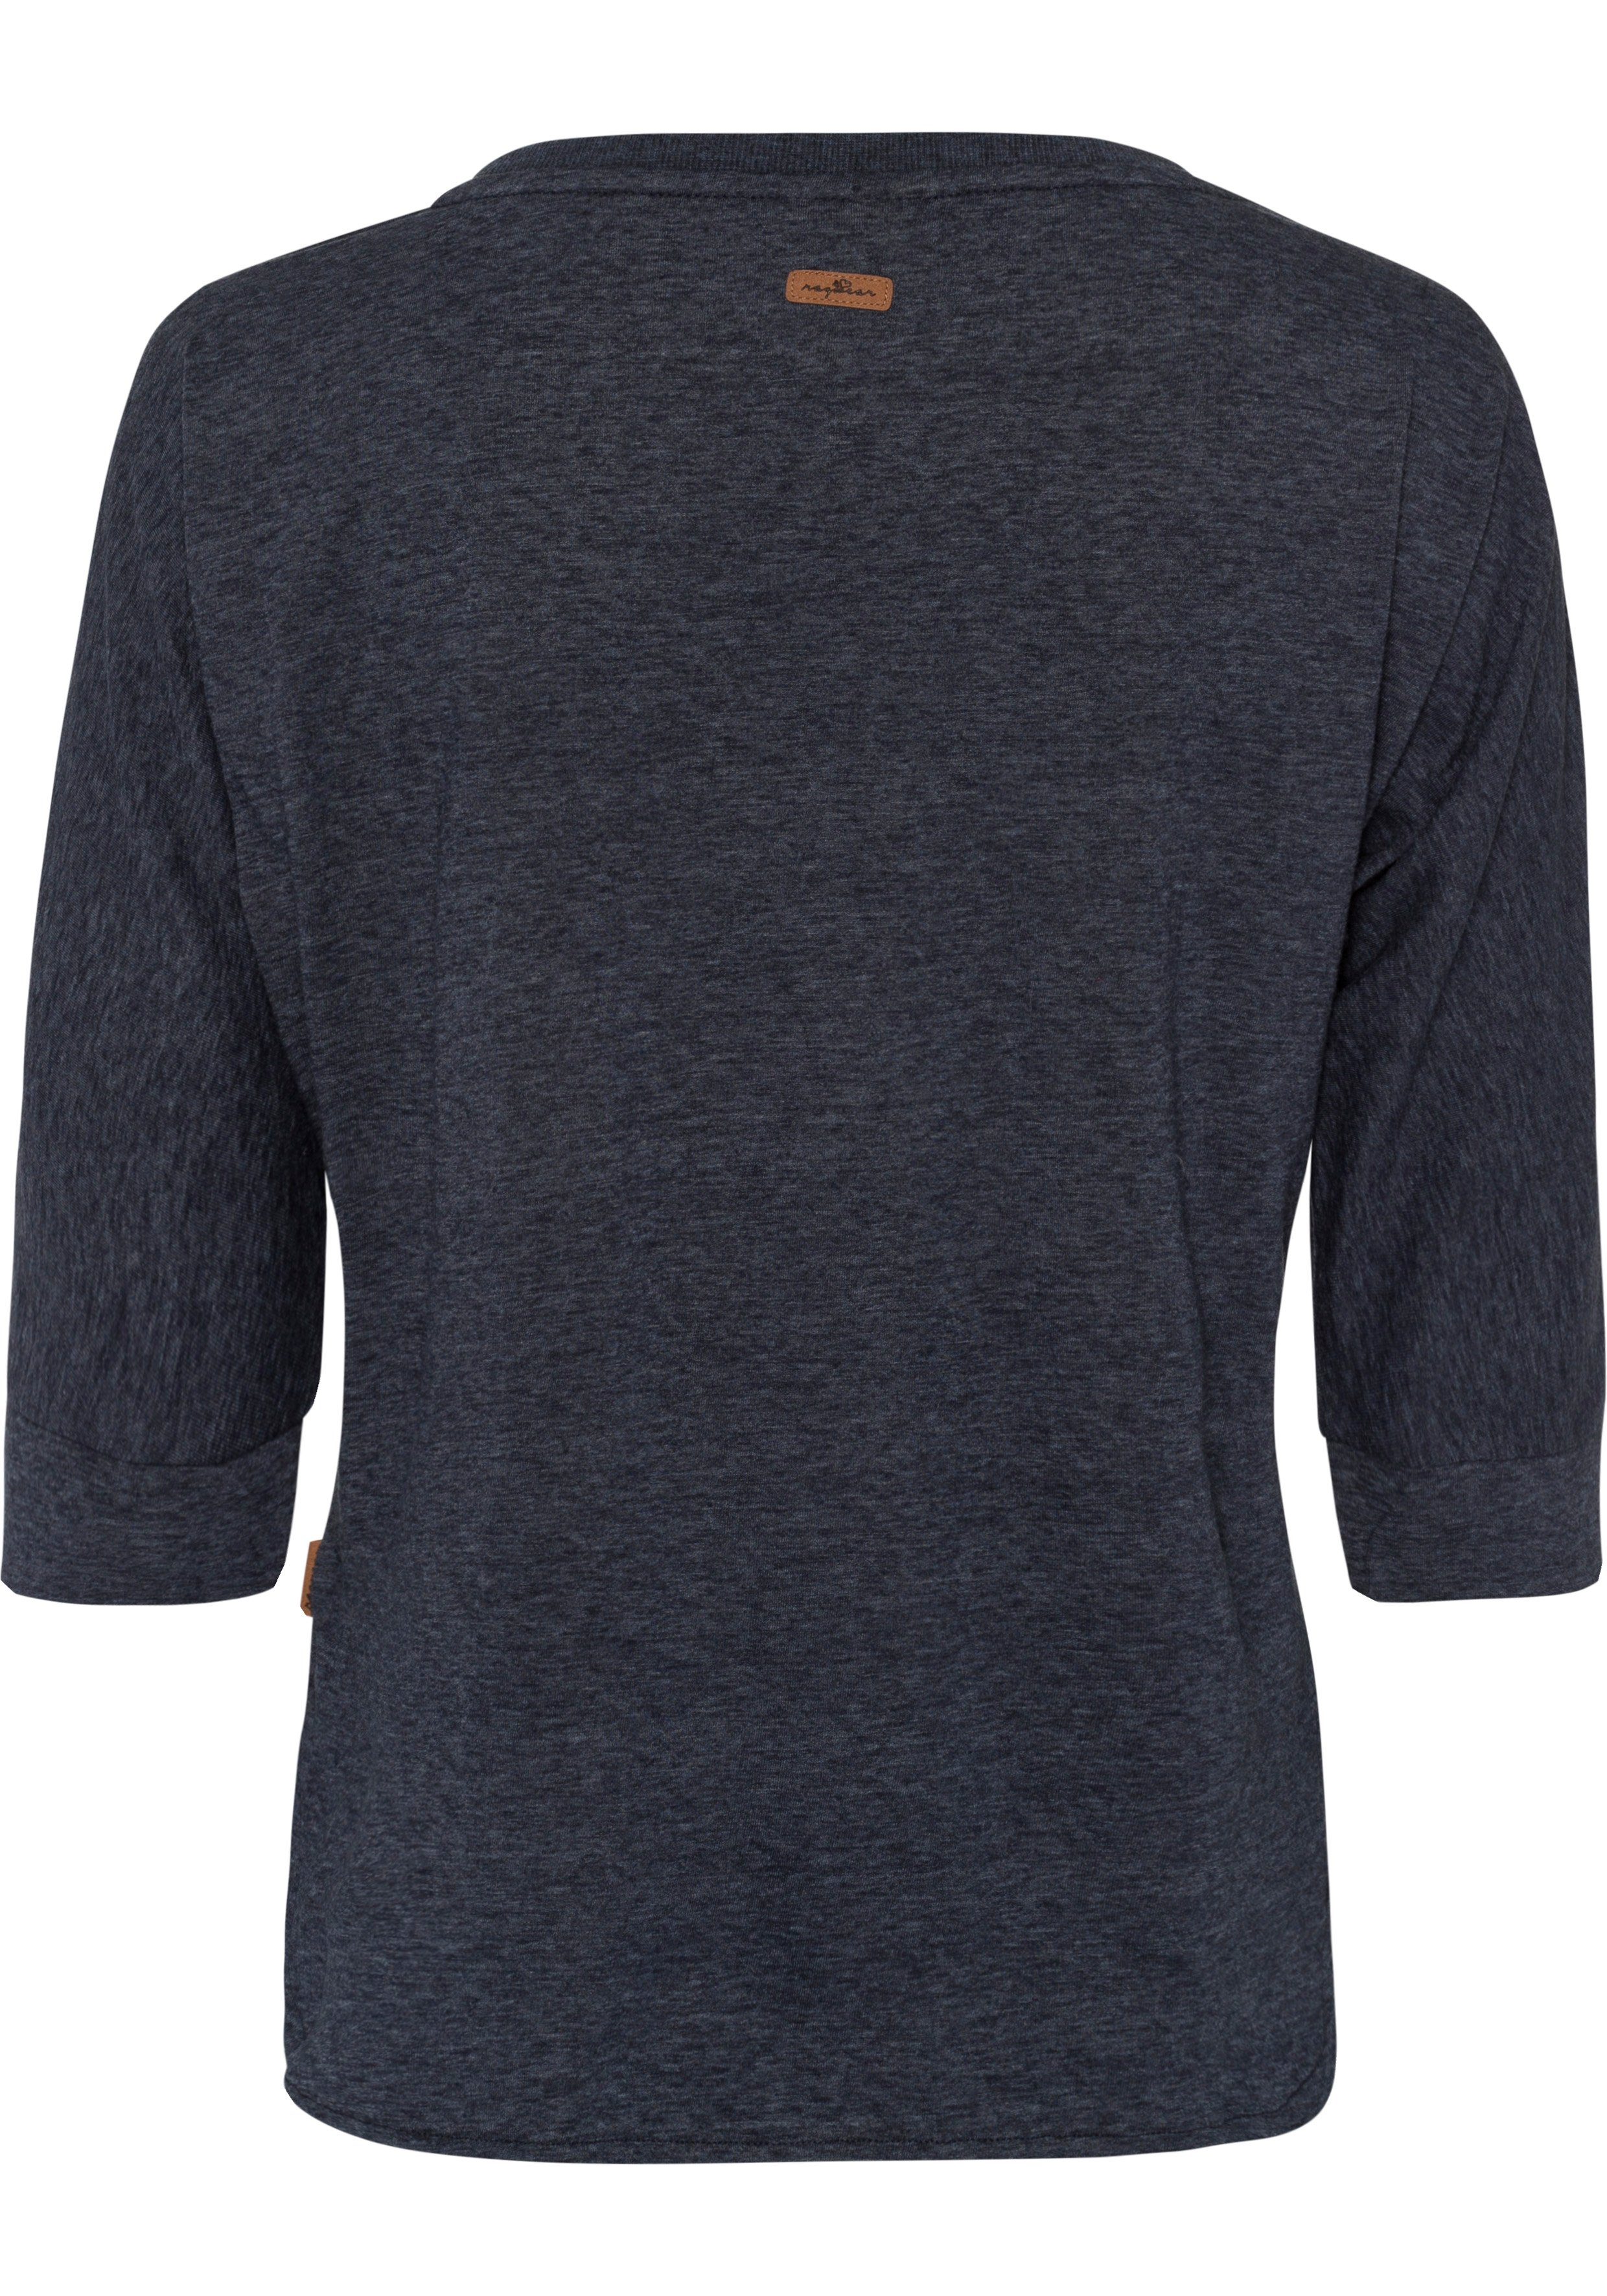 Ragwear T-Shirt im Zierknopfbesatz in navy Herz-Design mit natürlicher Holzoptik SHIMONA